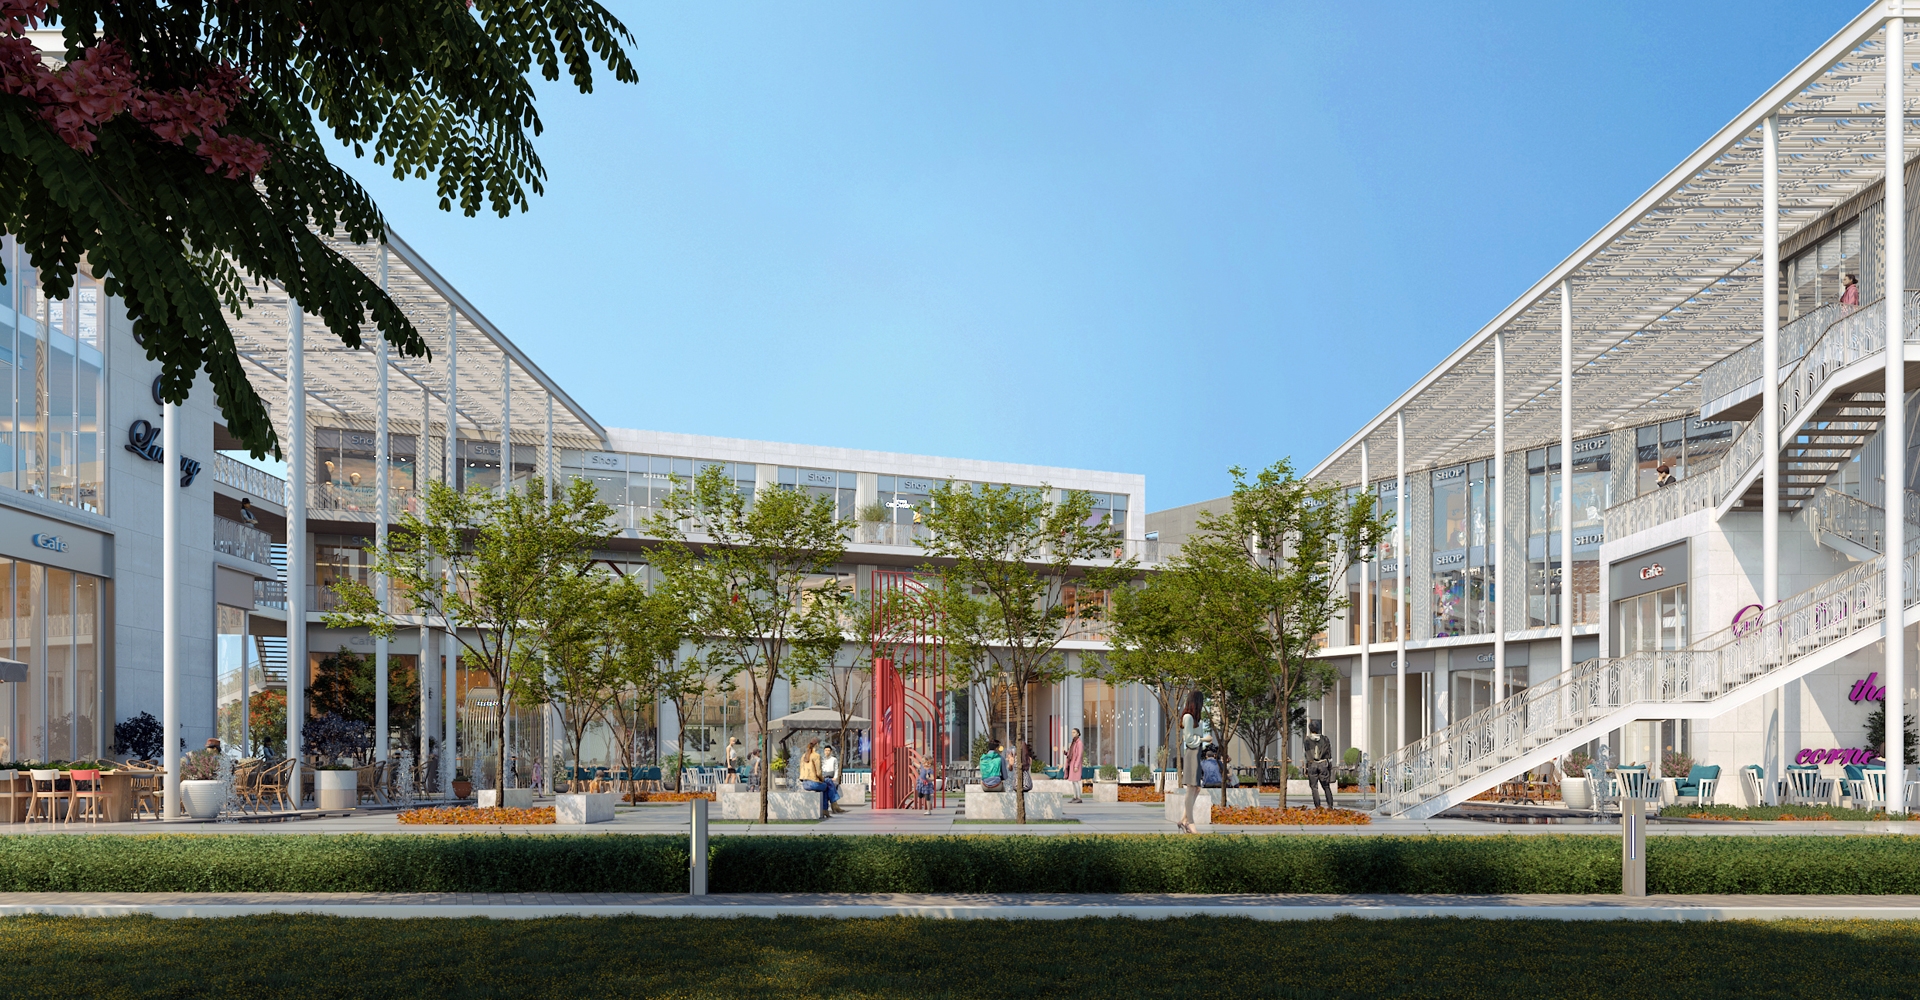 مول بوتانيكا هب ستريب العاصمة الإدارية الجديدة - Botanica Hub Strip Mall New Capitalتجاري - طبي